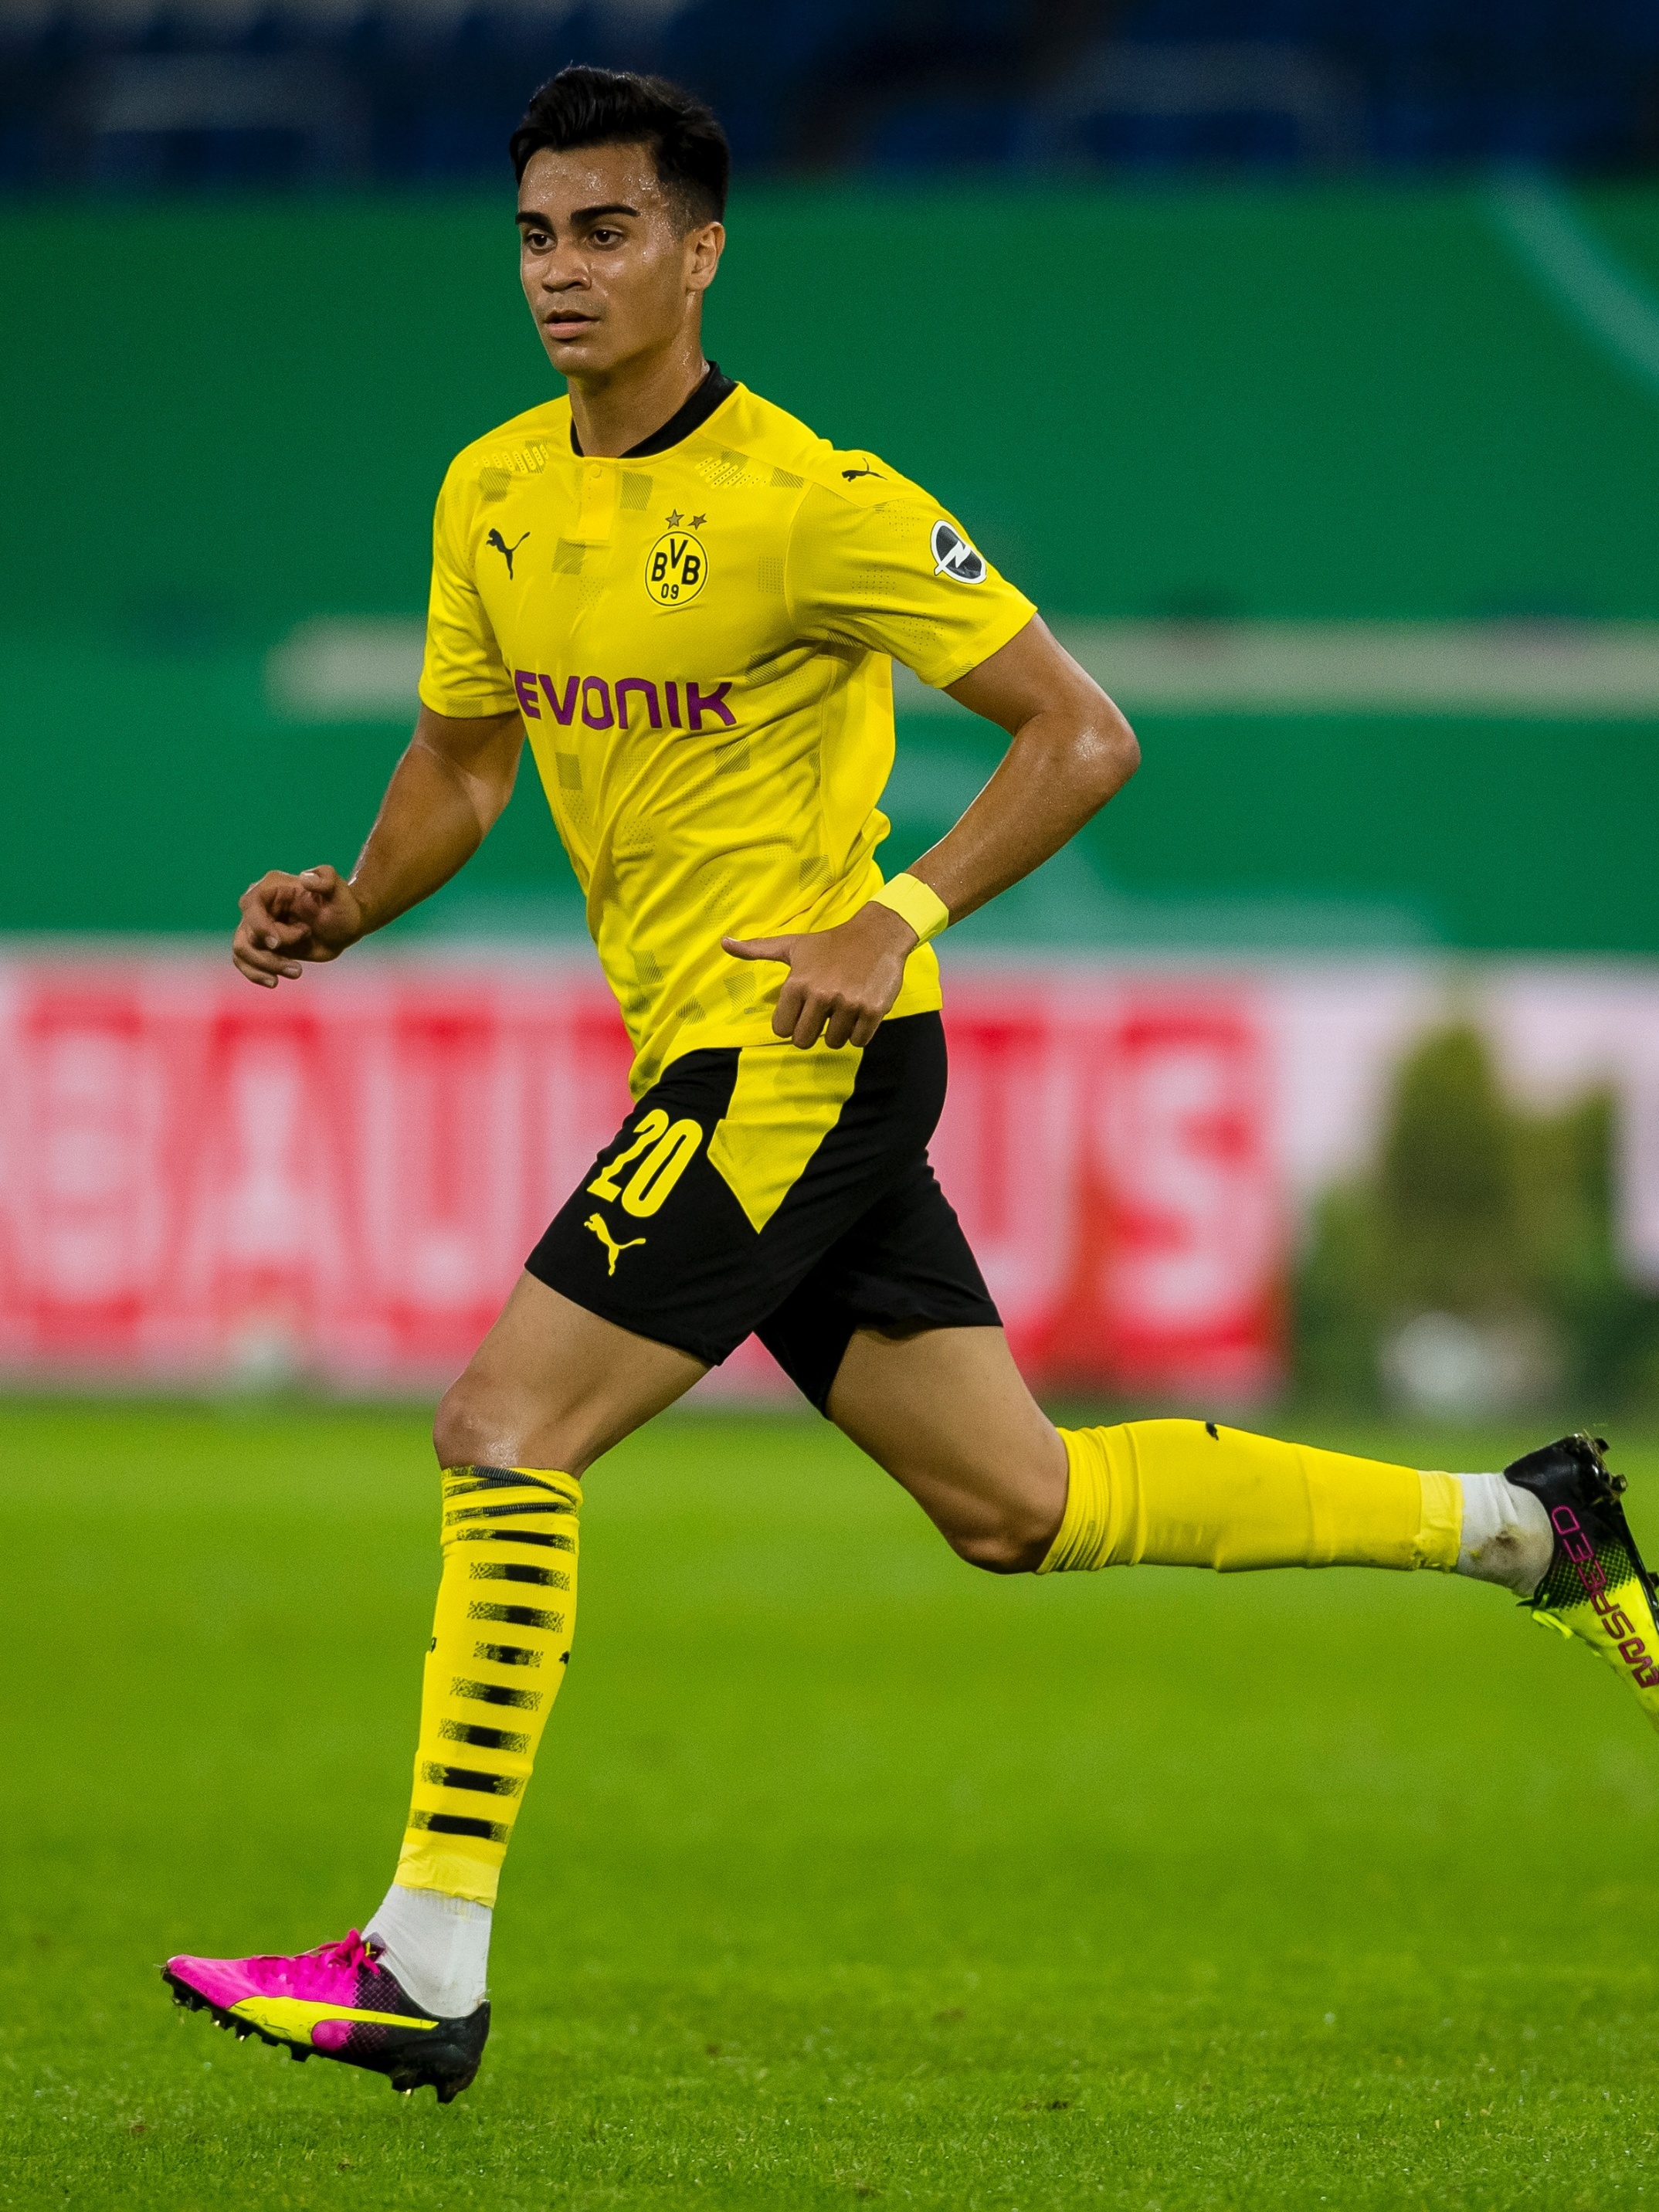 Reinier: Quero crescer como jogador e aprender coisas novas no Borussia